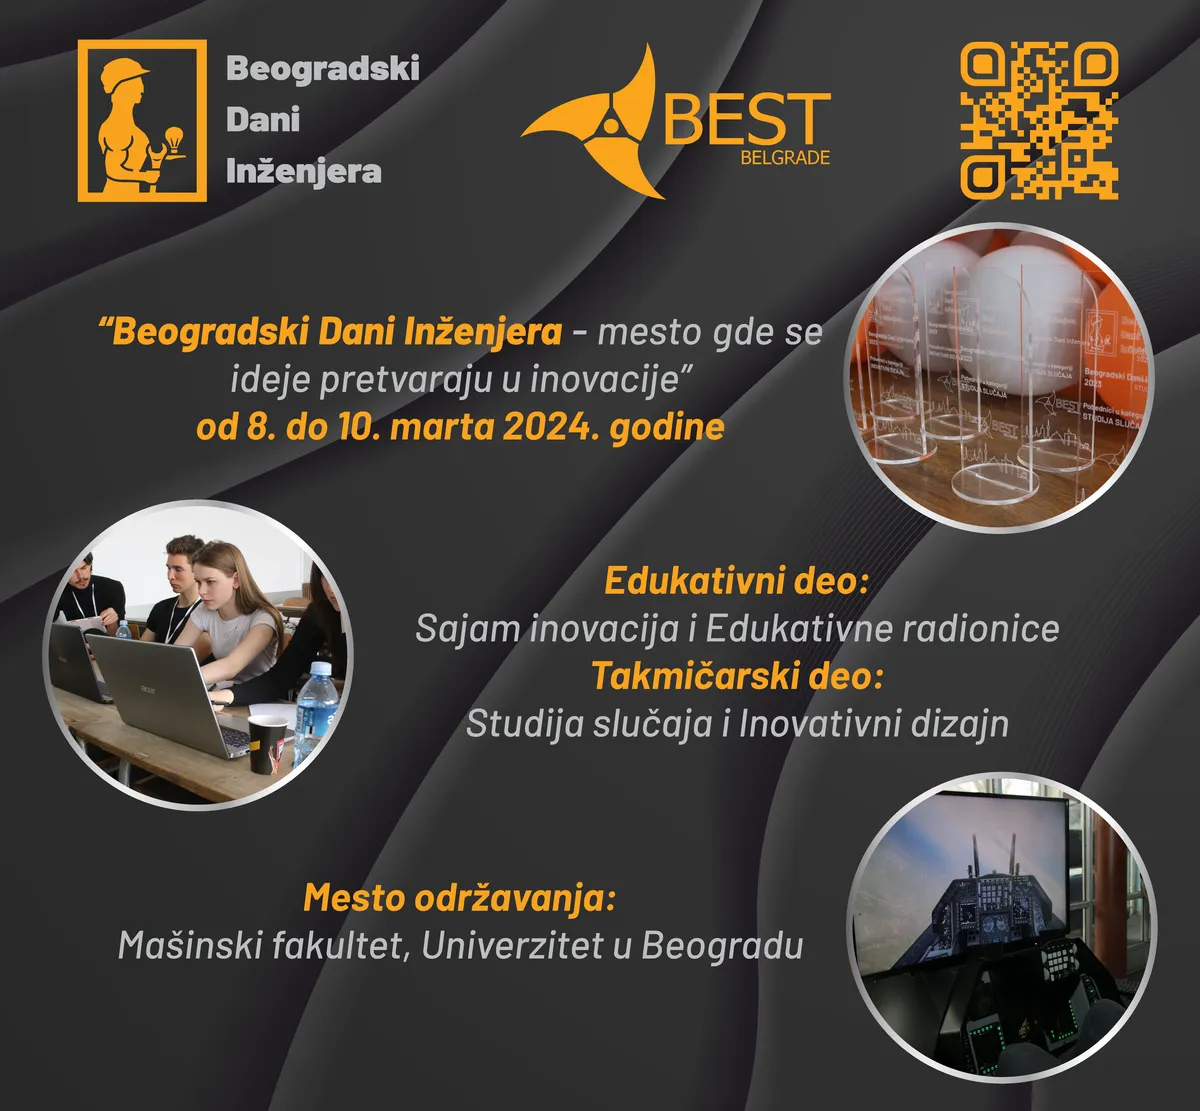 Beogradski Dani Inženjera - mesto gde se ideje pretvaraju u inovacije